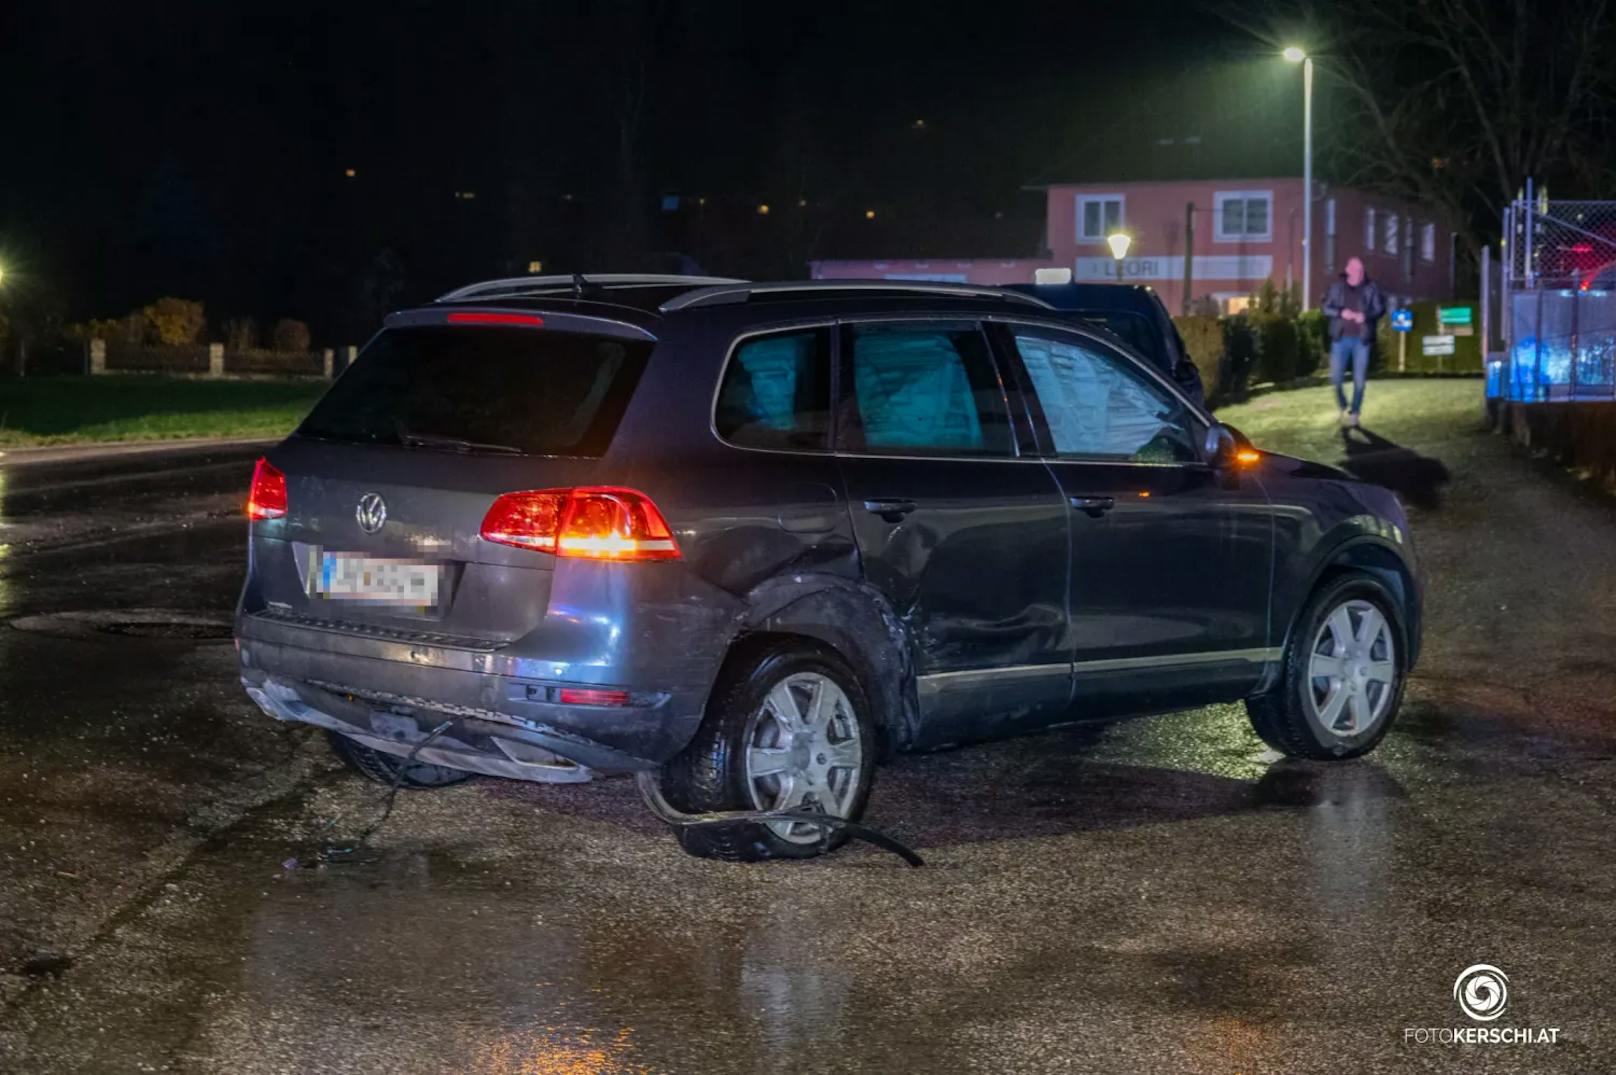 Die Feuerwehr Micheldorf wurde am späten Montagabend zu Aufräumarbeiten nach einem Verkehrsunfall zur "Mazda Wagner Kreuzung" alarmiert. Zwei Autos waren an einer Kreuzung zusammengestoßen.